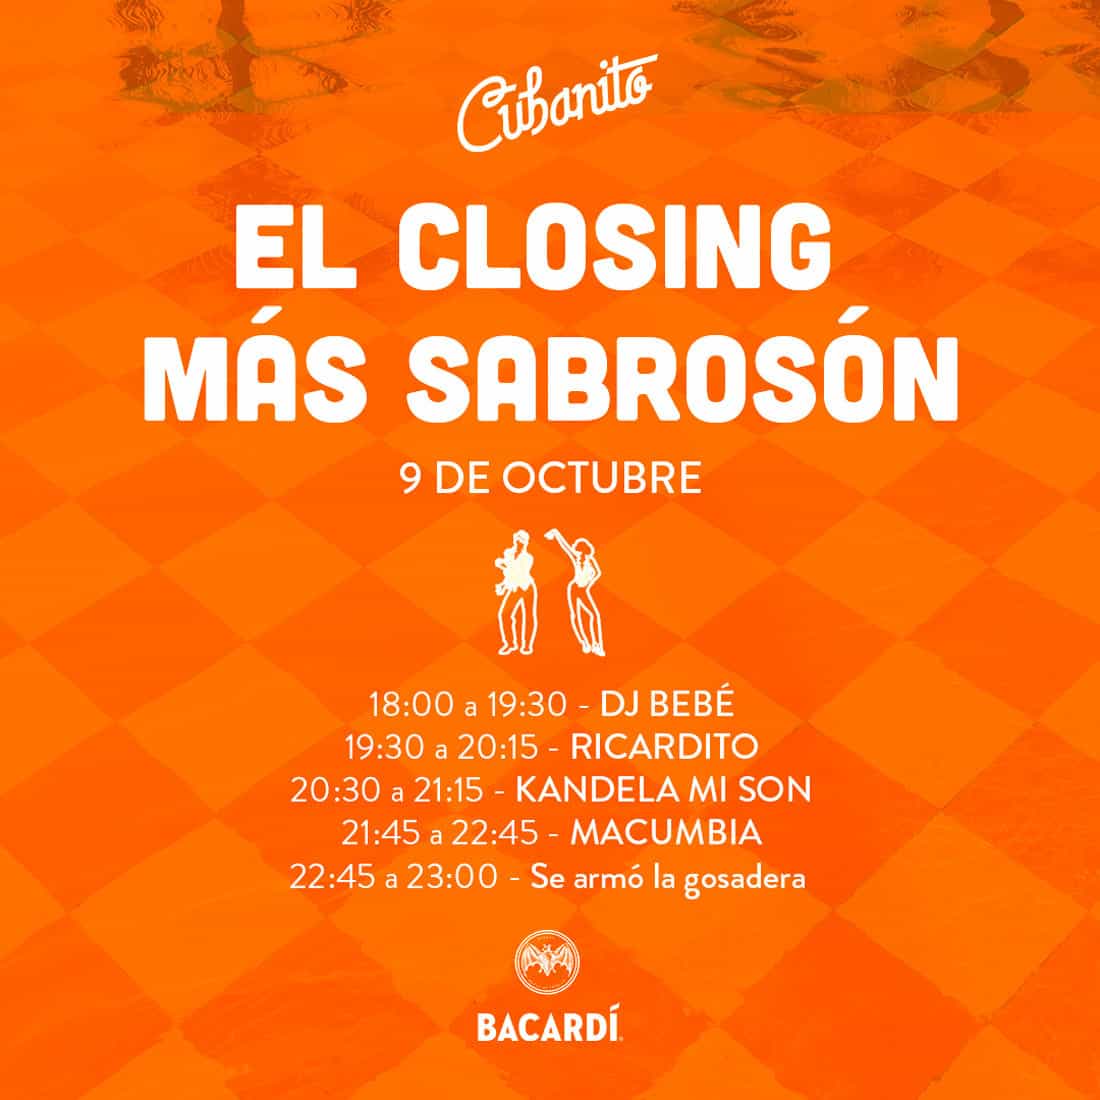 El Closing més saborós a Cubanito Eivissa Festes Eivissa